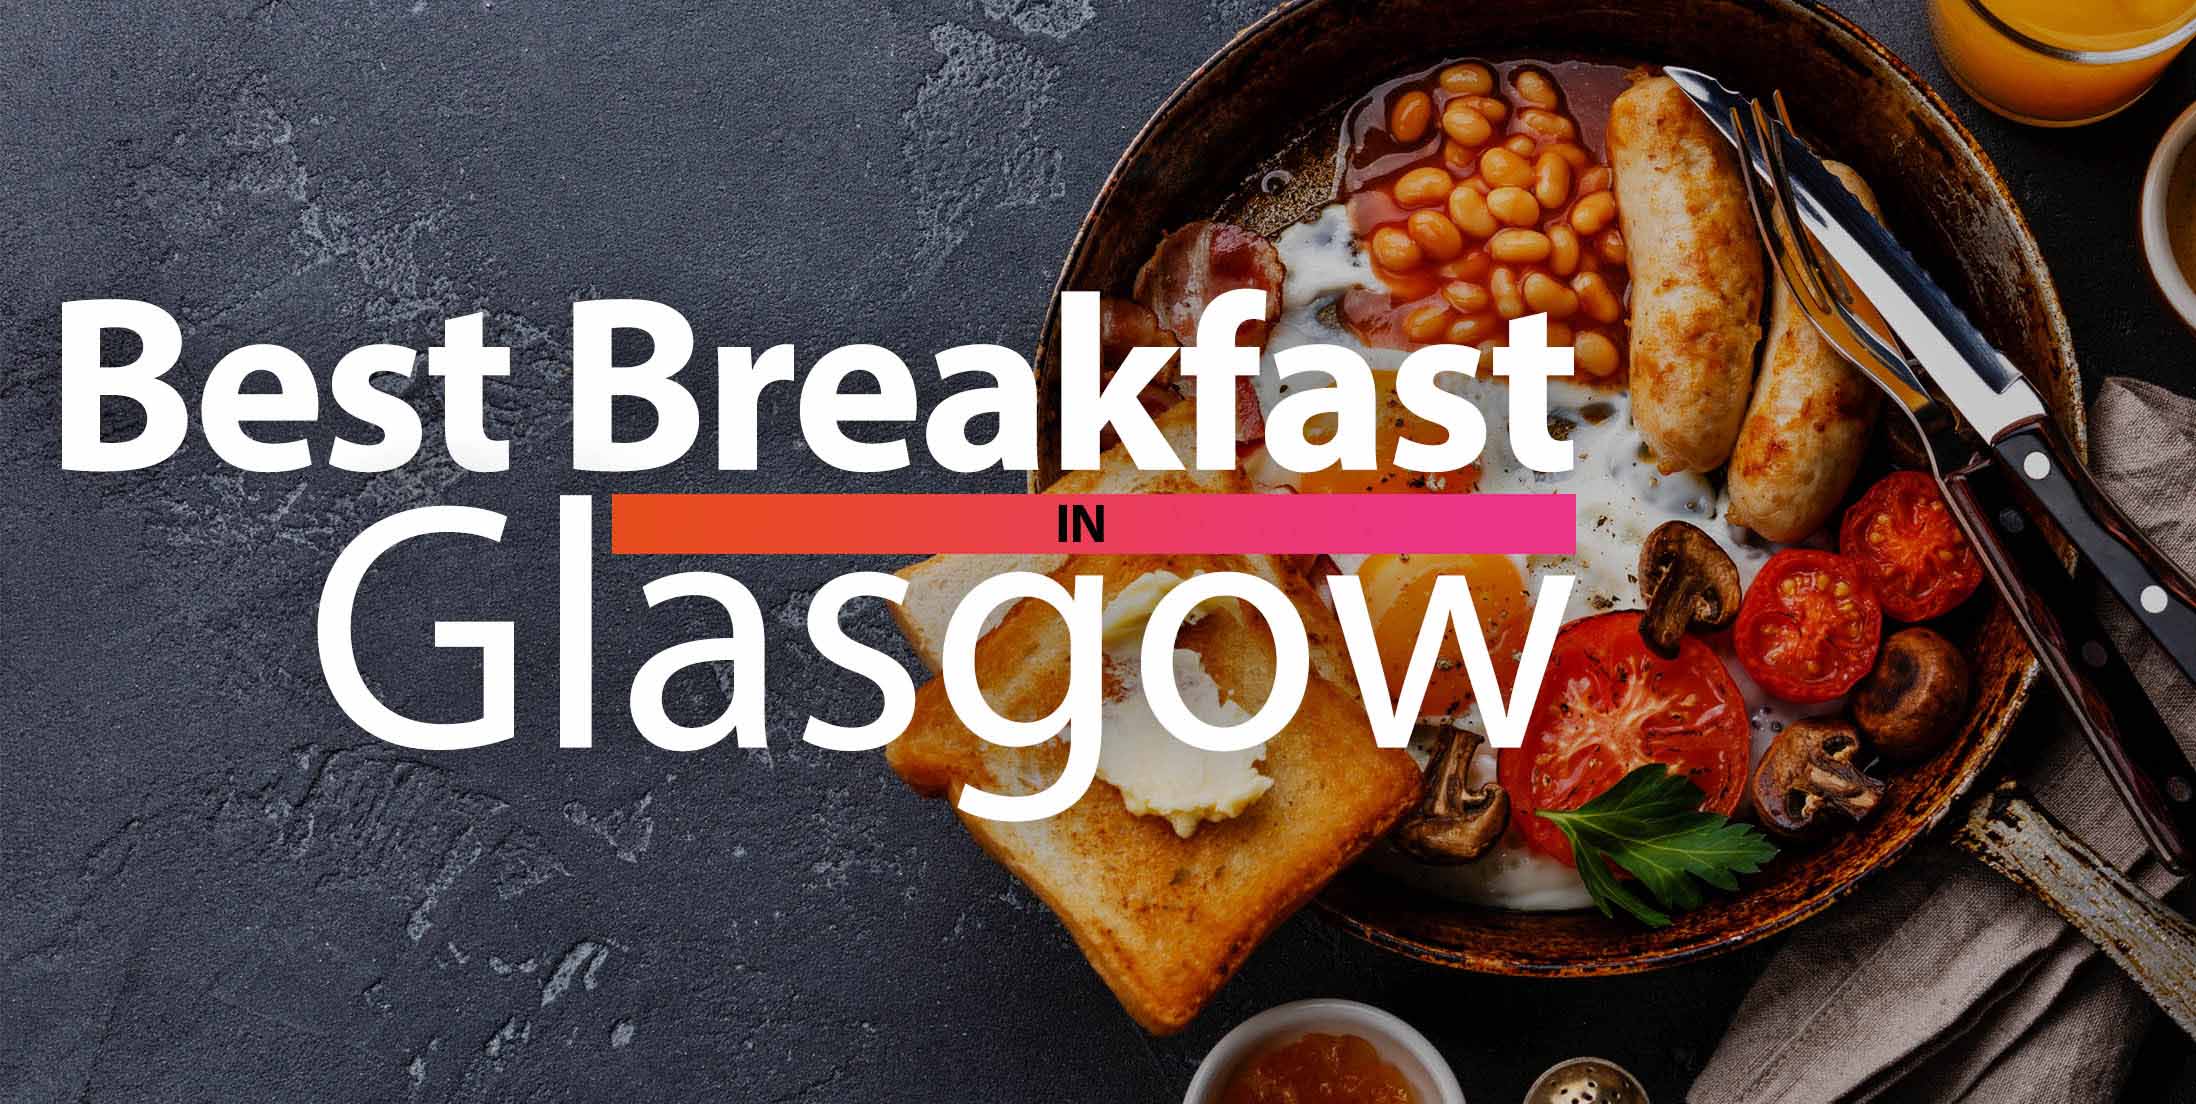 Best Breakfast in Glasgow